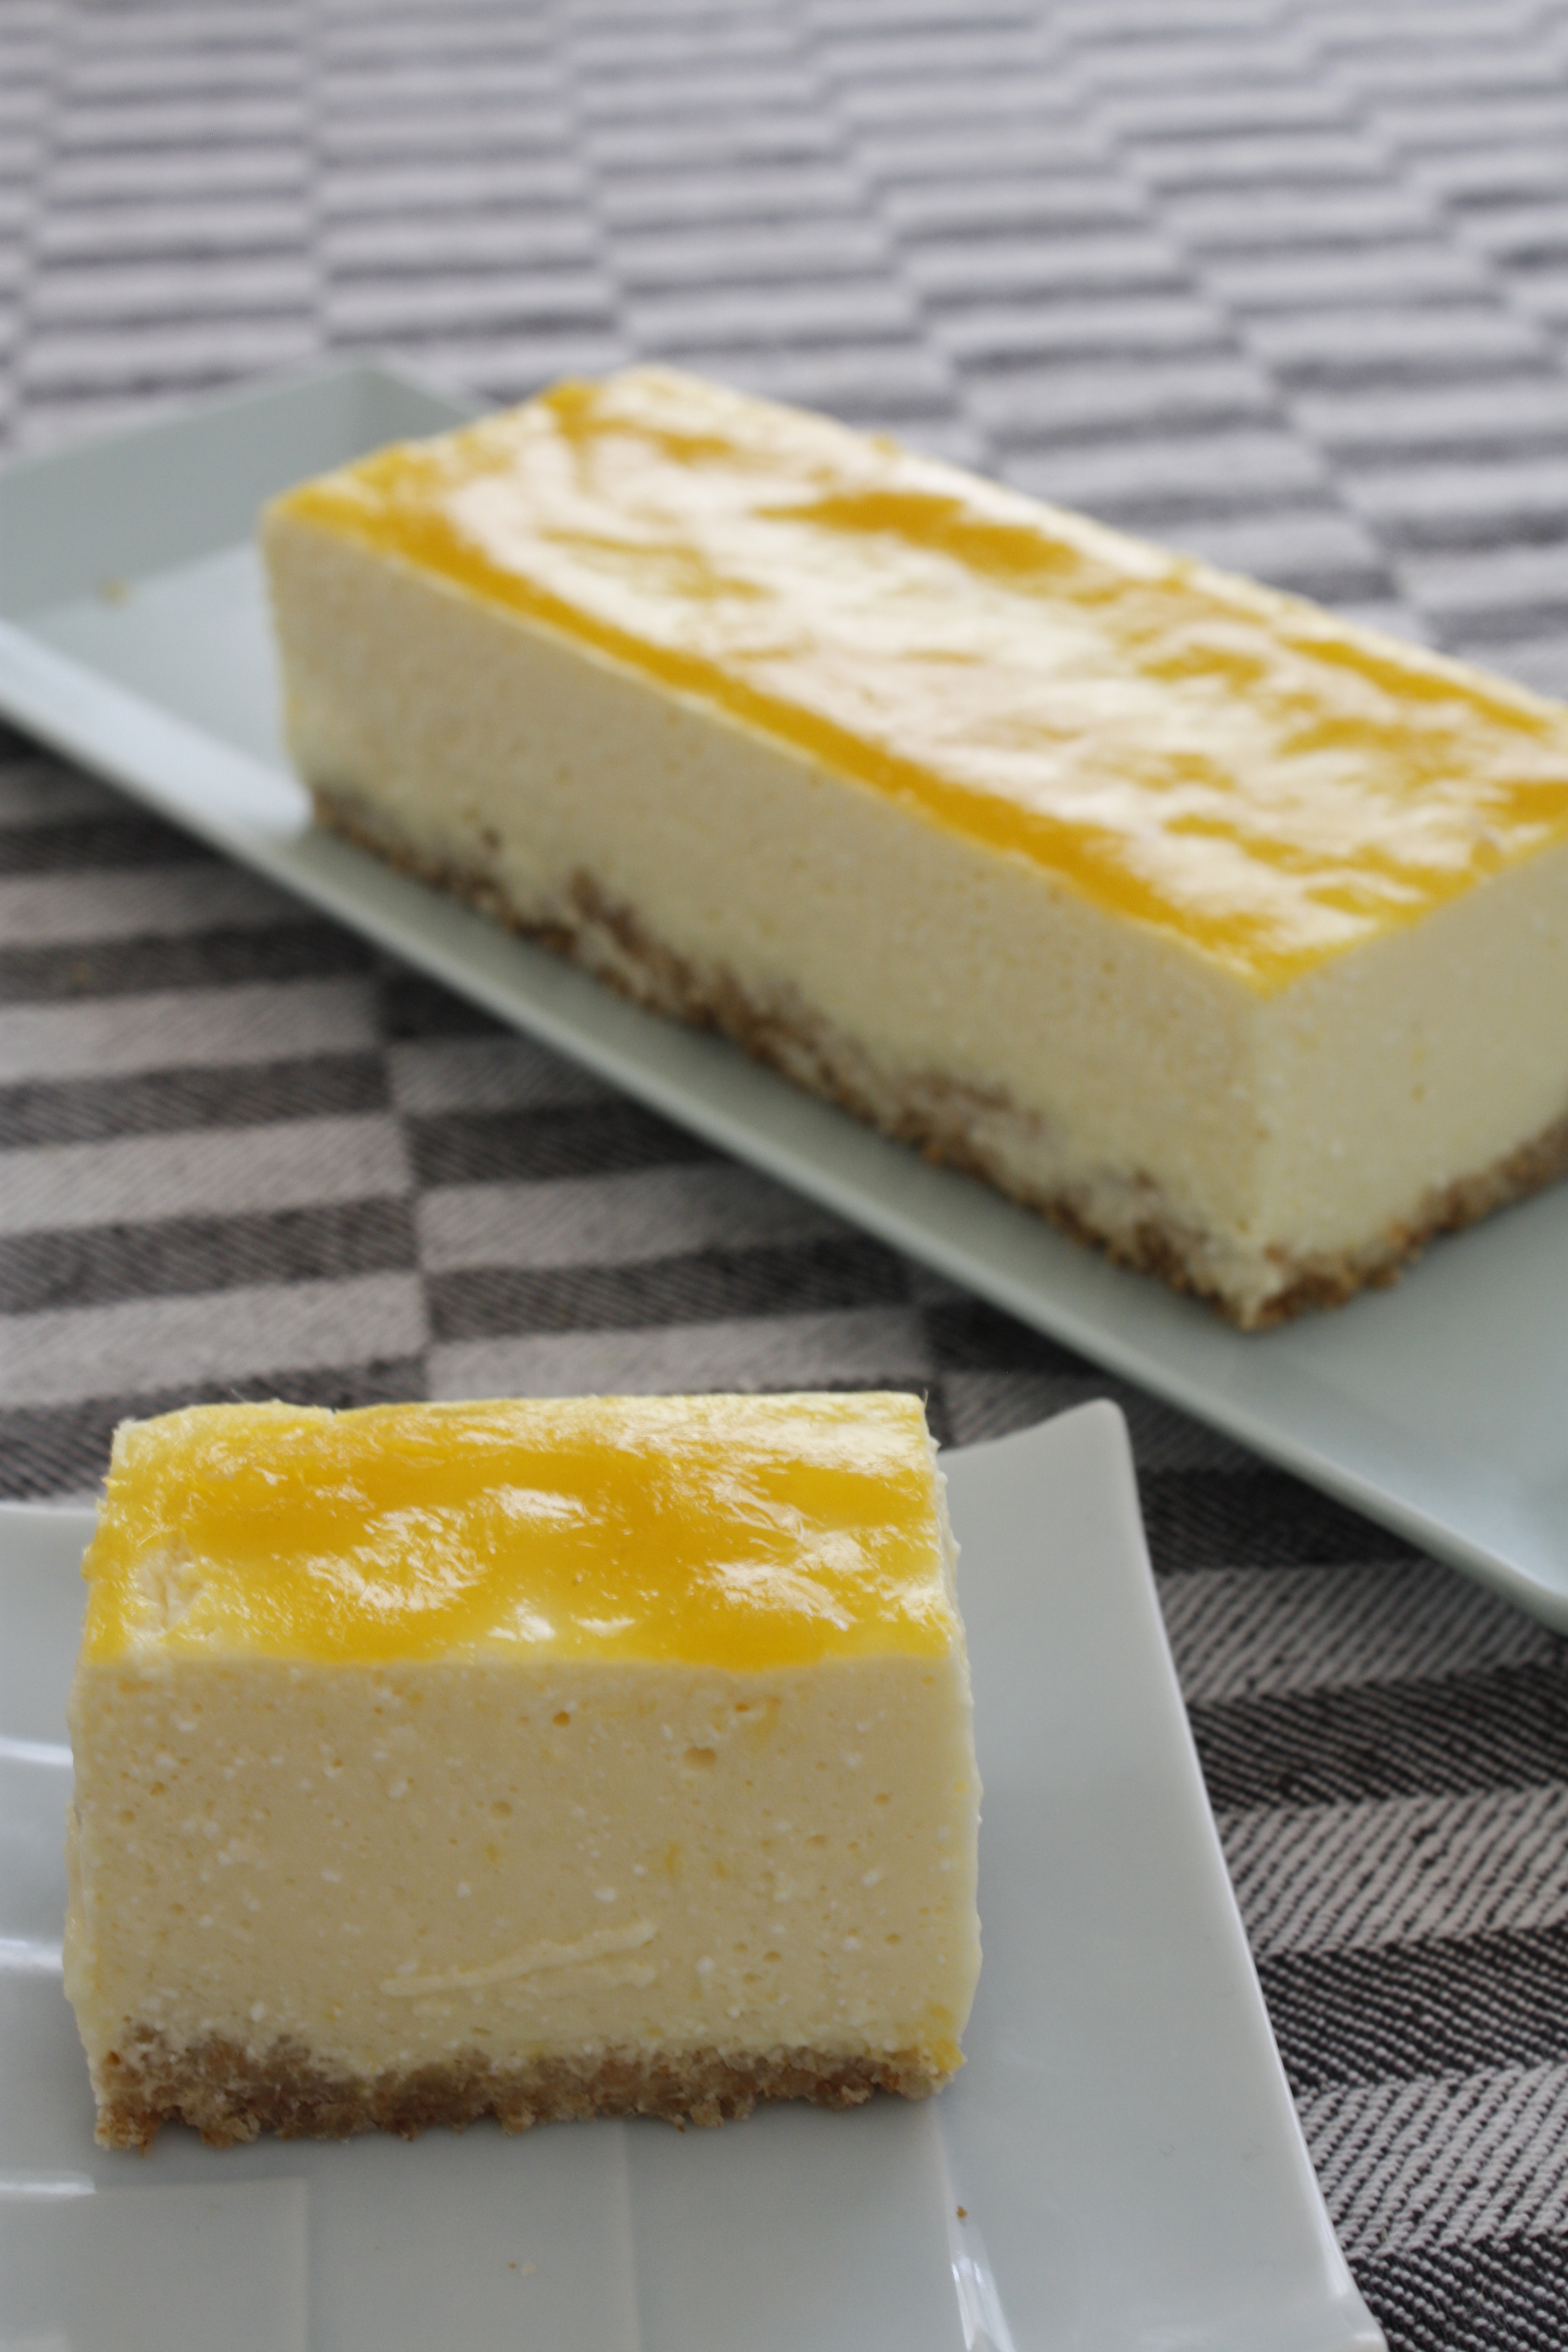 マンゴーのレアチーズケーキのレシピ 作り方 小川 典子 料理教室検索サイト クスパ